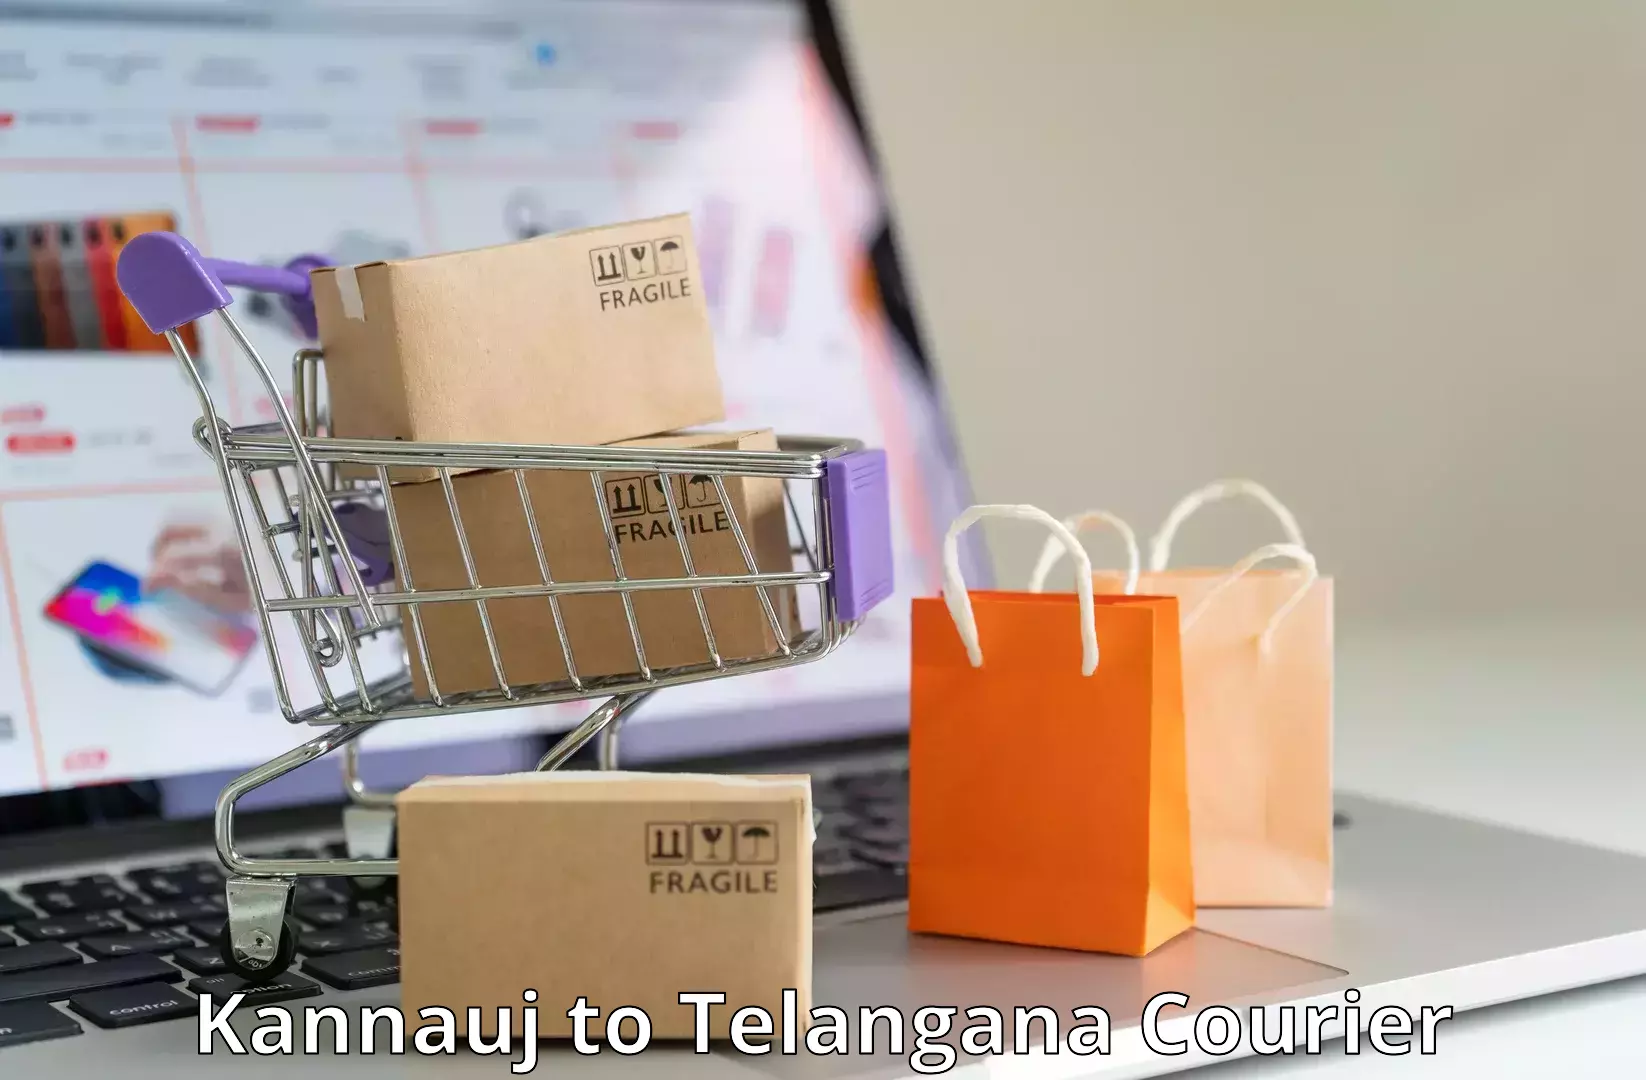 Subscription-based courier Kannauj to Mudigonda